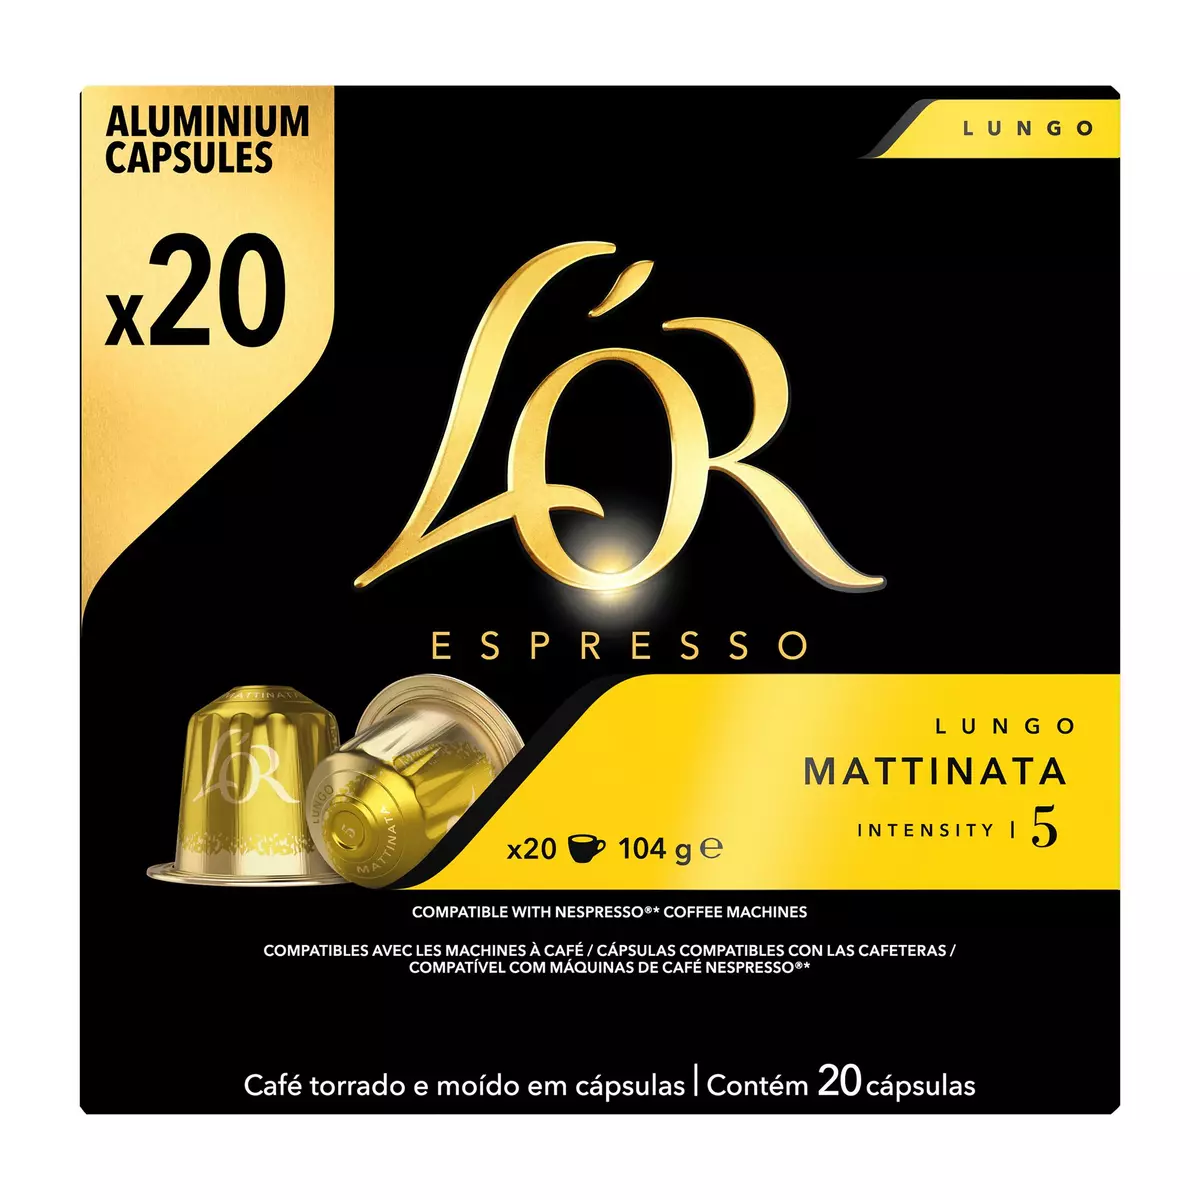 AUCHAN Dosettes de café classique intensité 5 compatibles Senseo 60 dosettes  414g pas cher 